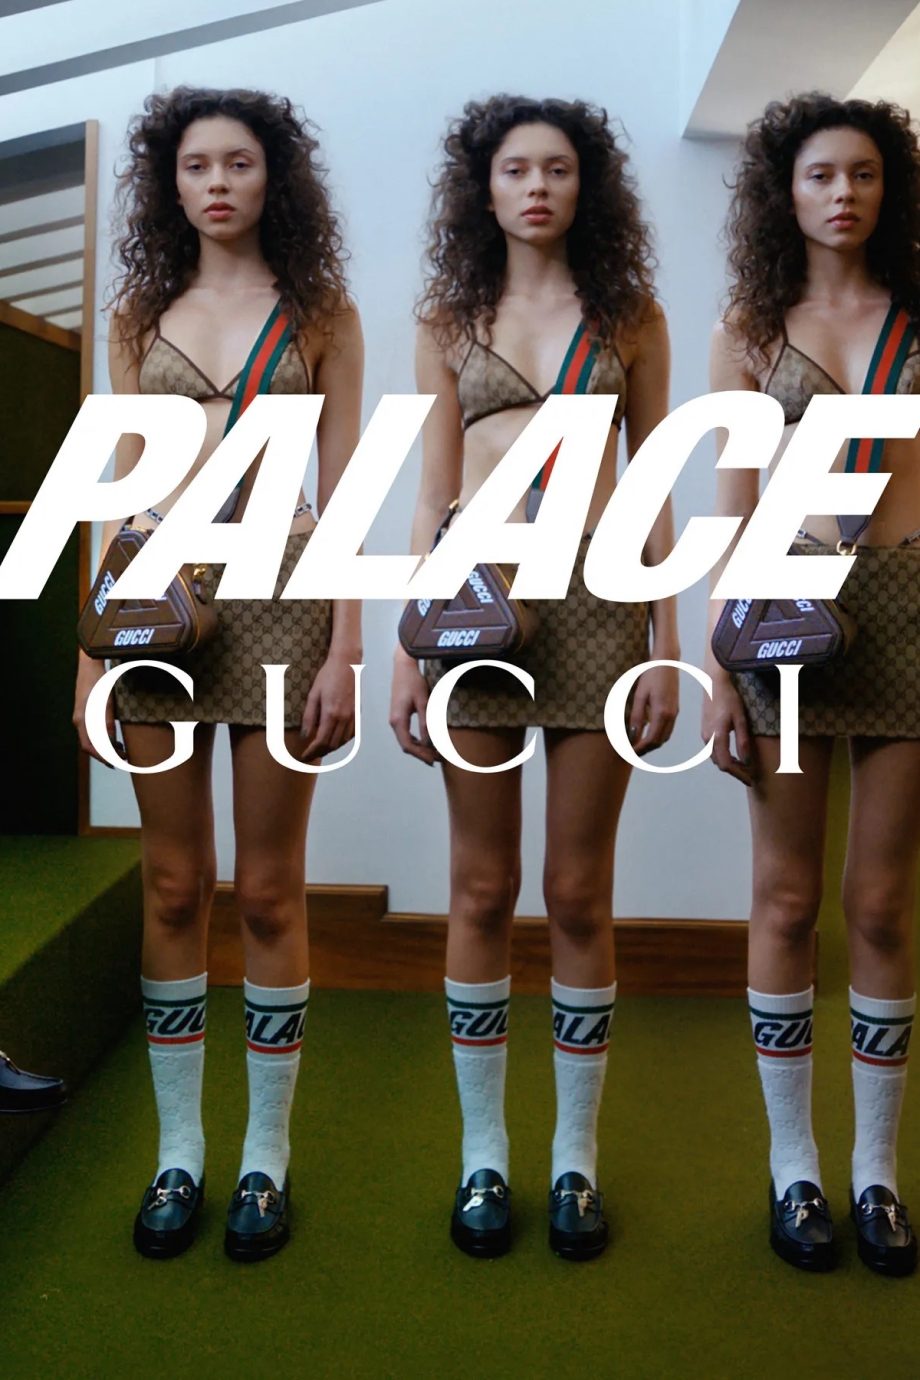 makkelijk te gebruiken Bijdrage Oude man De nieuwe Palace Gucci-collectie is het ultieme mode-experiment